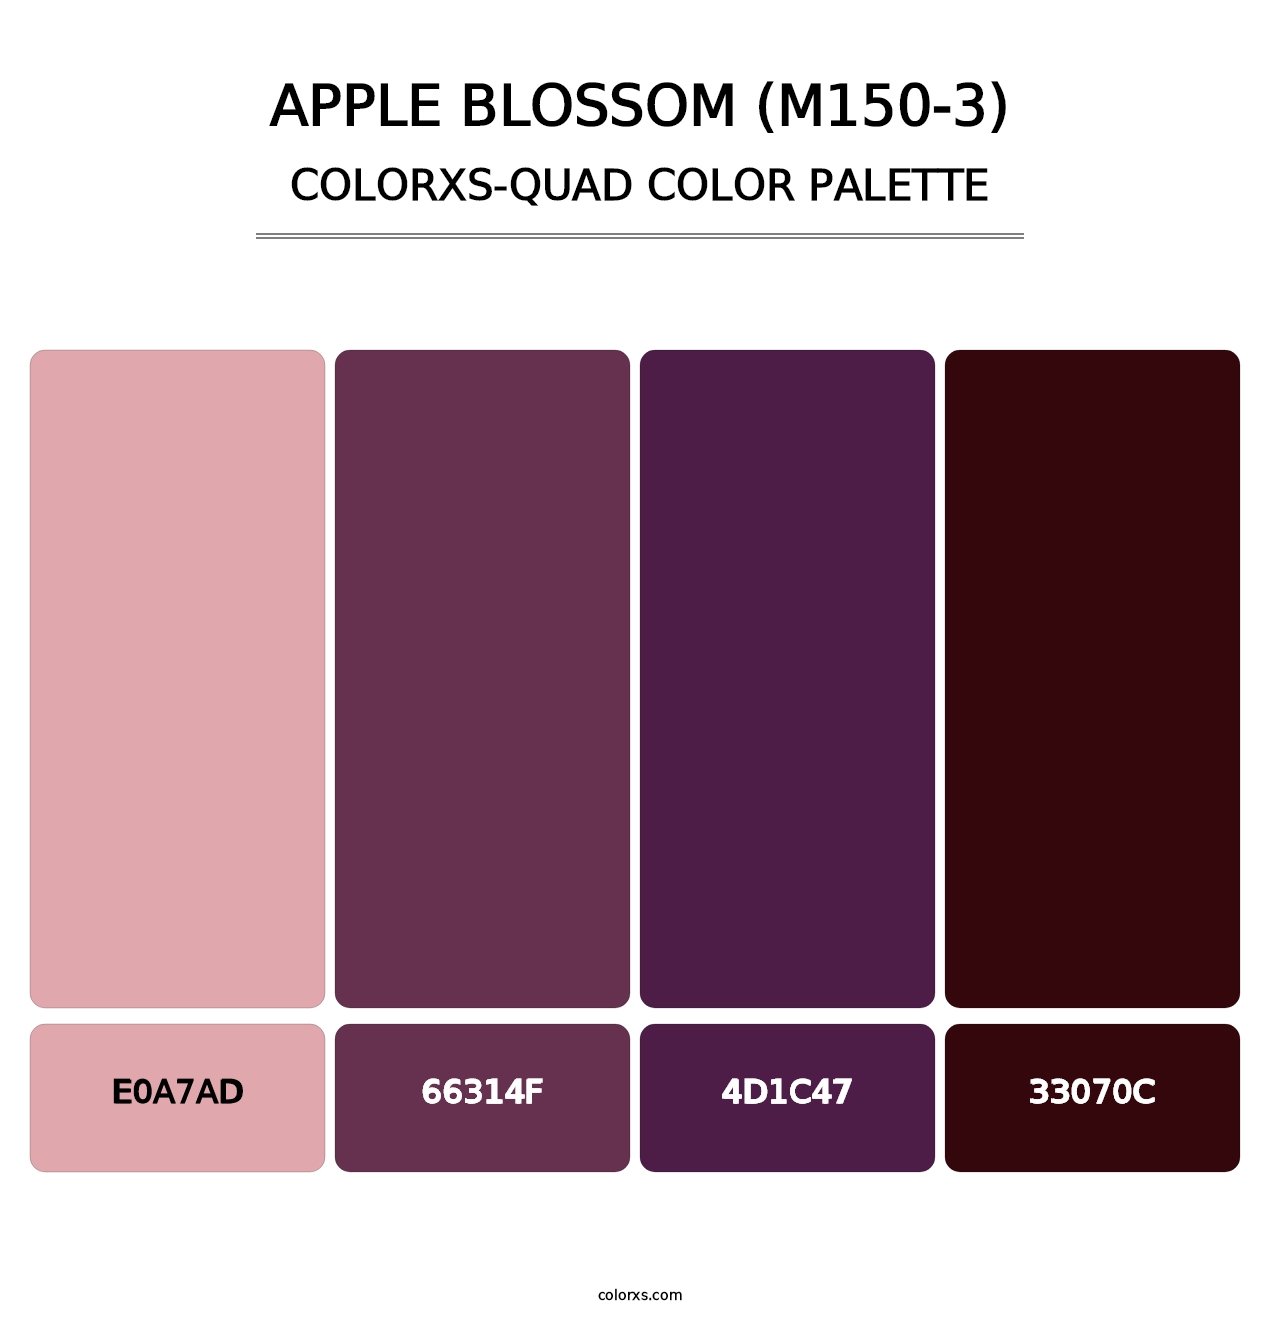 Apple Blossom (M150-3) - Colorxs Quad Palette